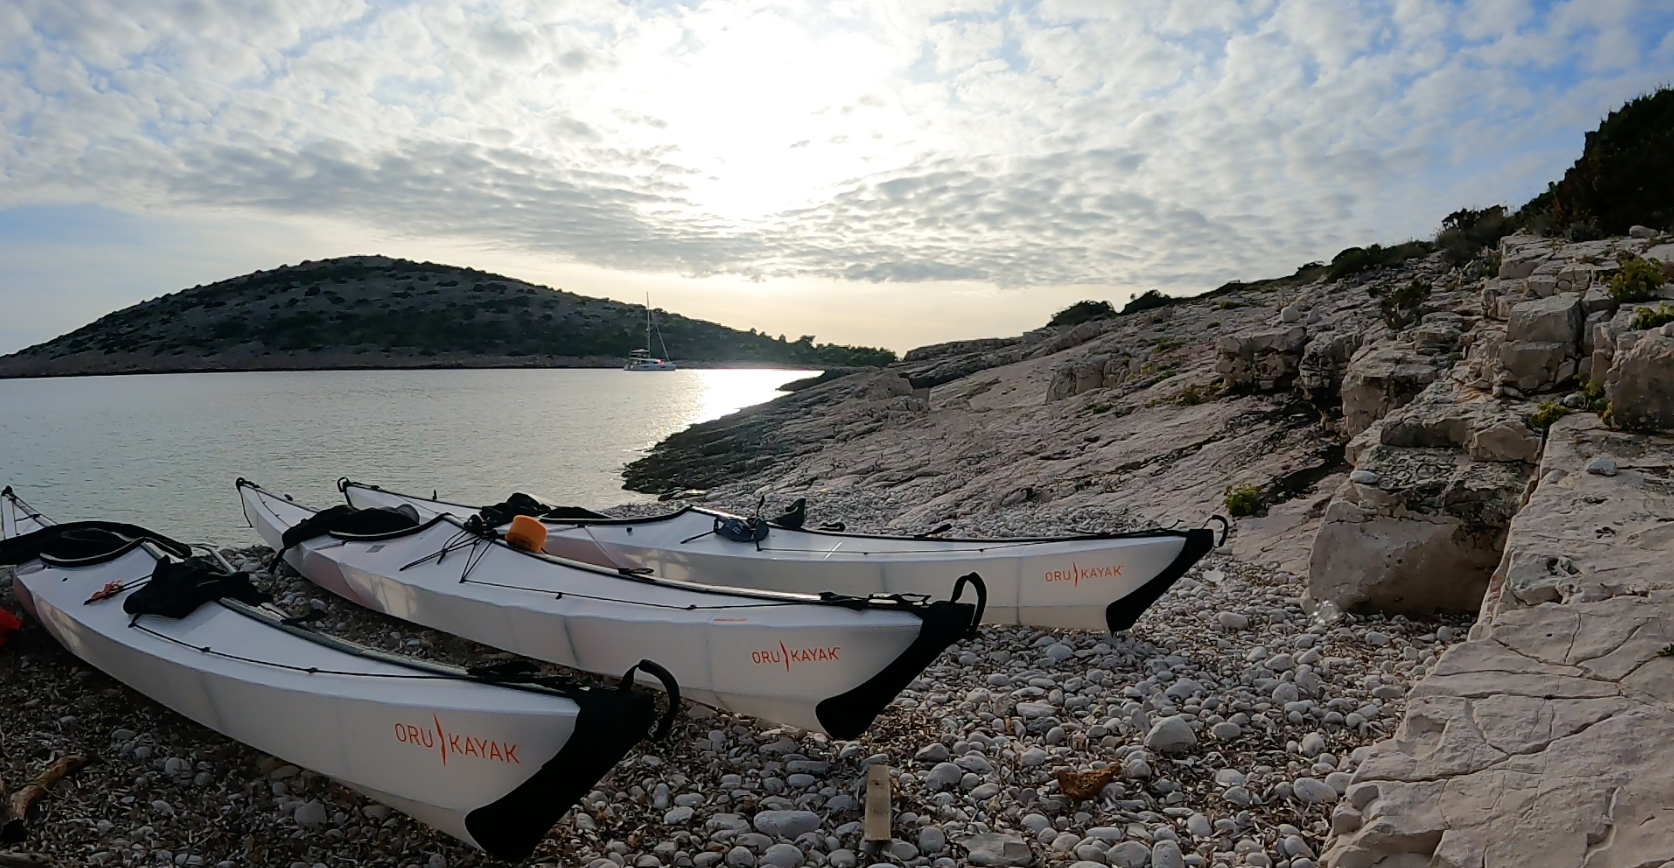 Oru Kayaks am Strand in Kroatien